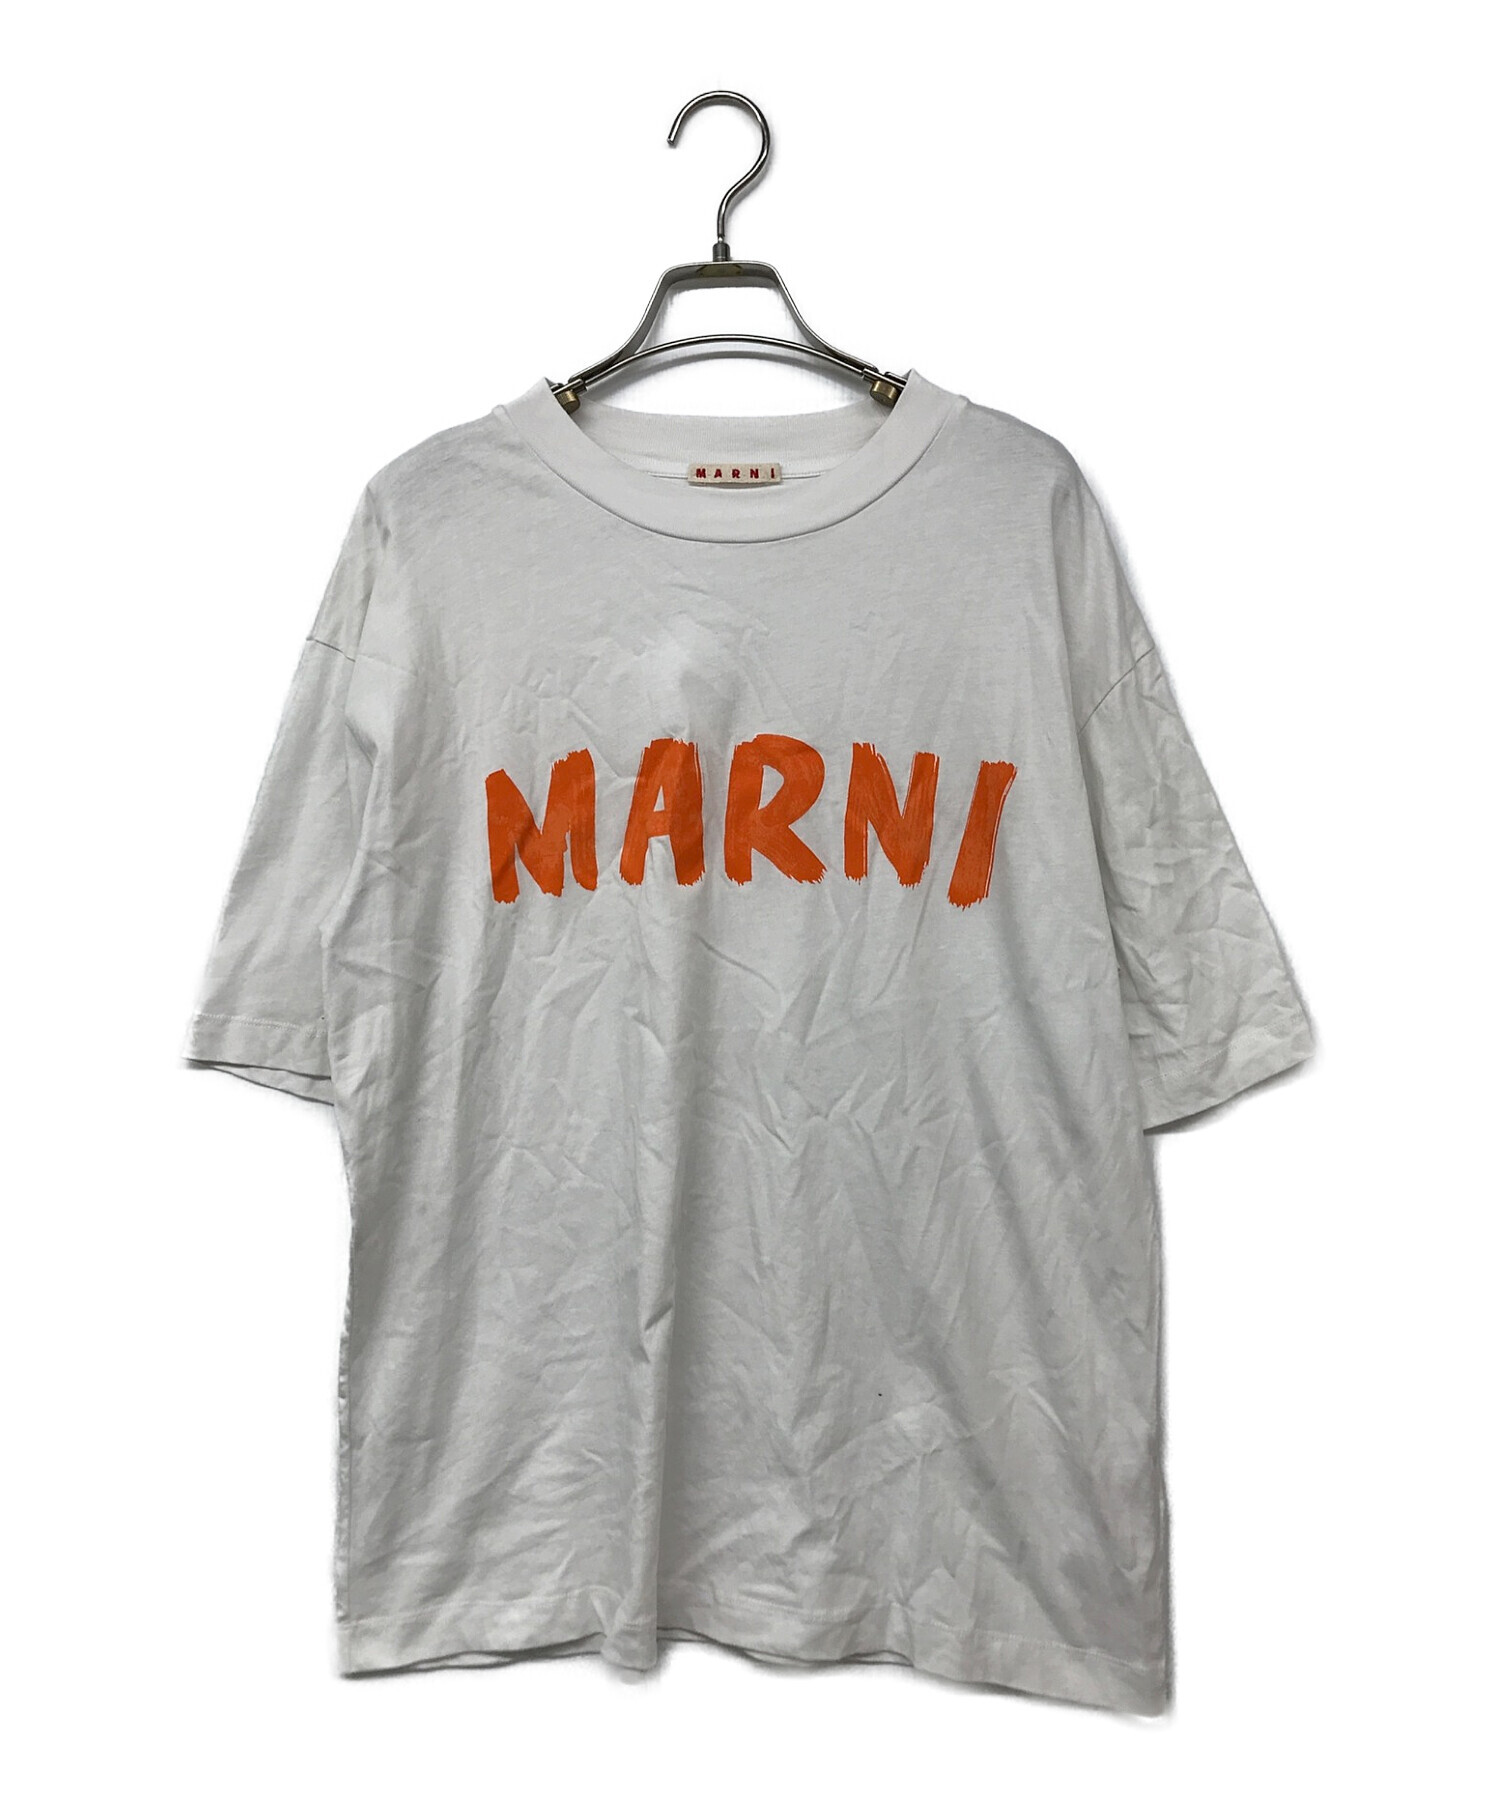 公式サイト通販 MARNI Tシャツ 38サイズ | www.artfive.co.jp